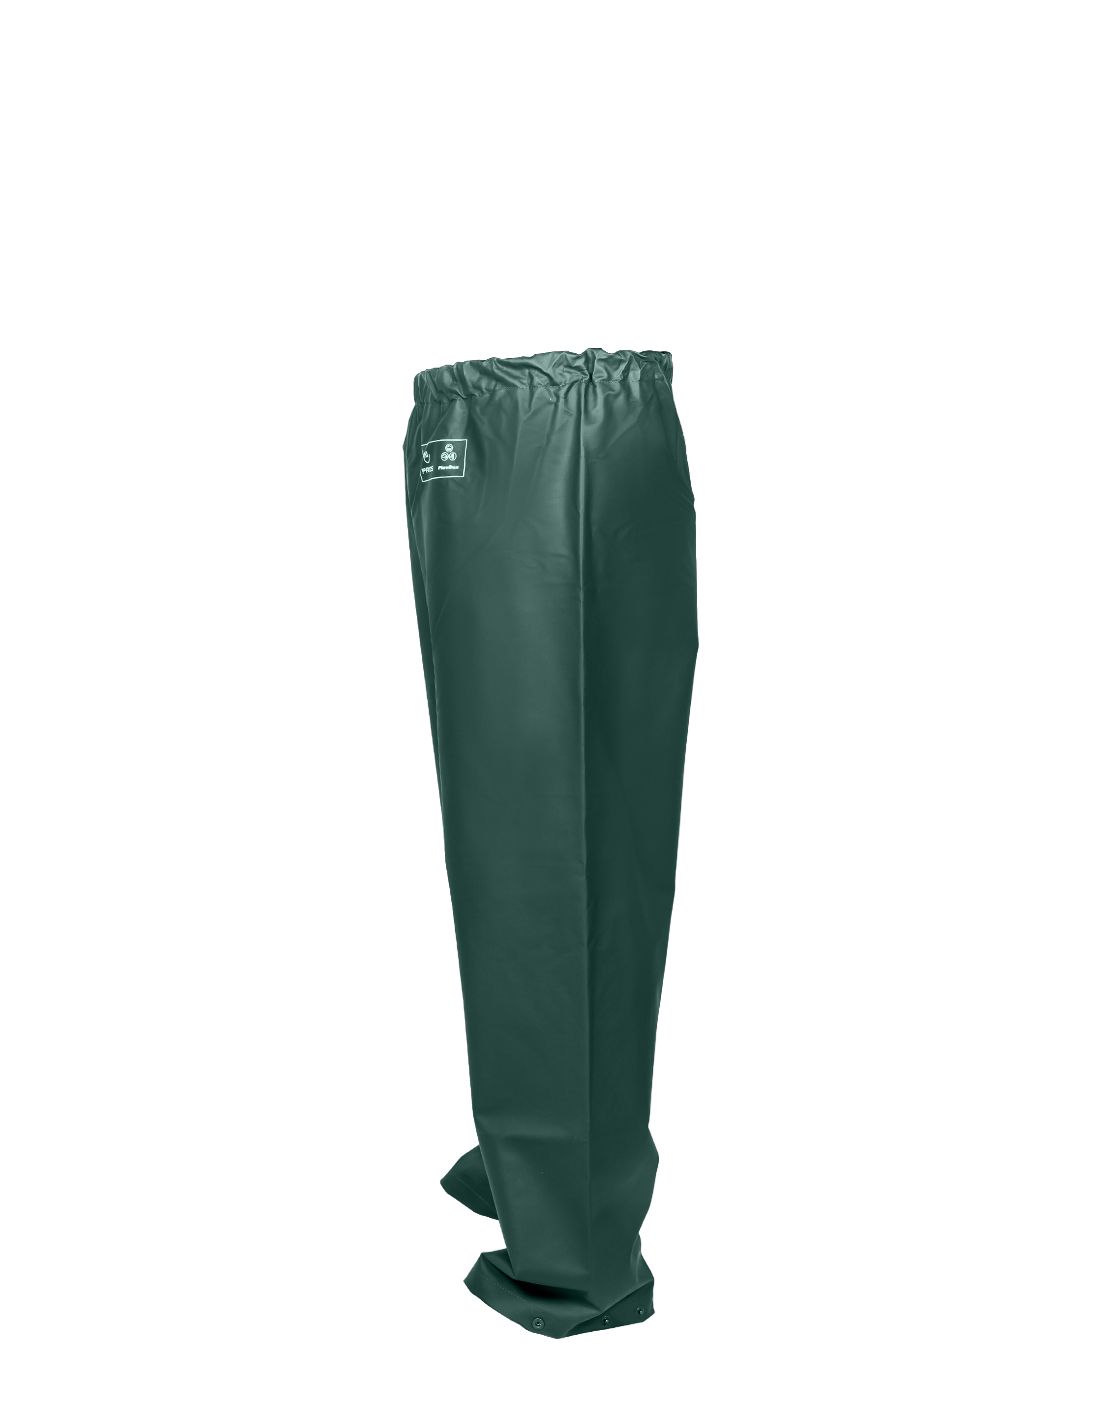 Waterproof Trousers - PROS